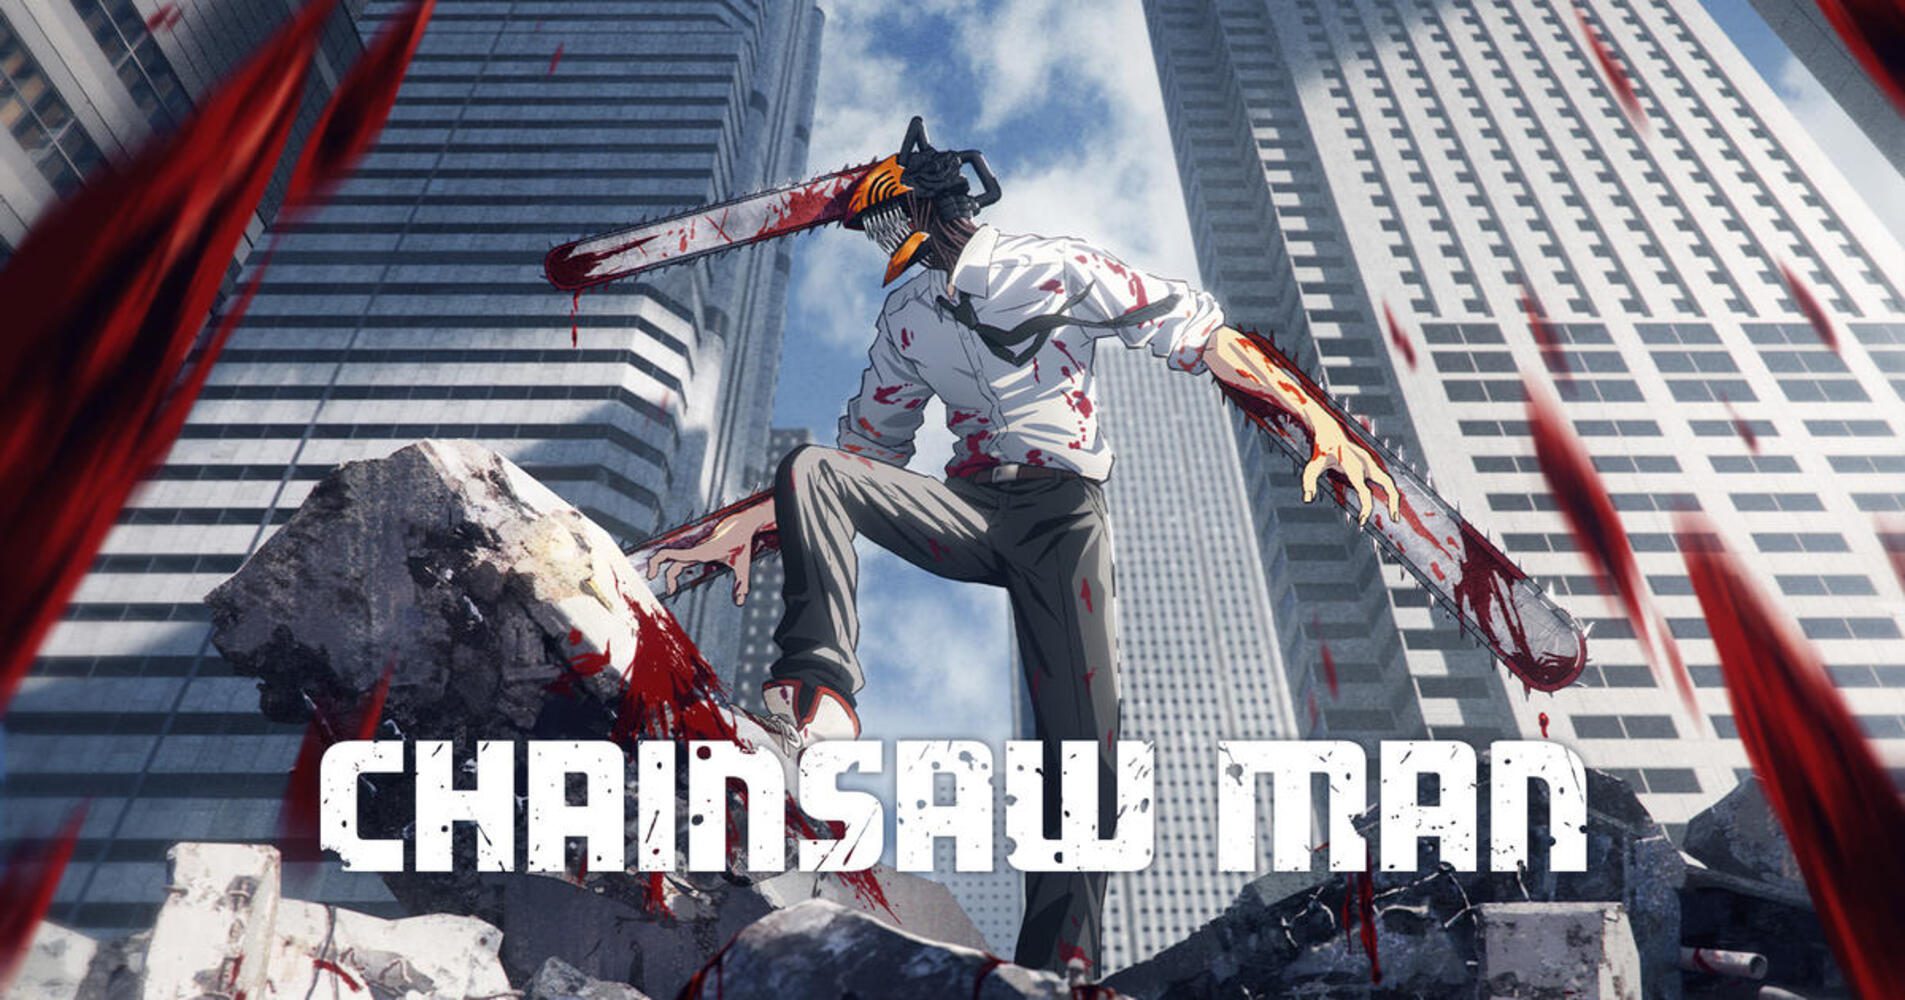 Chainsaw Man Episodes Release Schedule